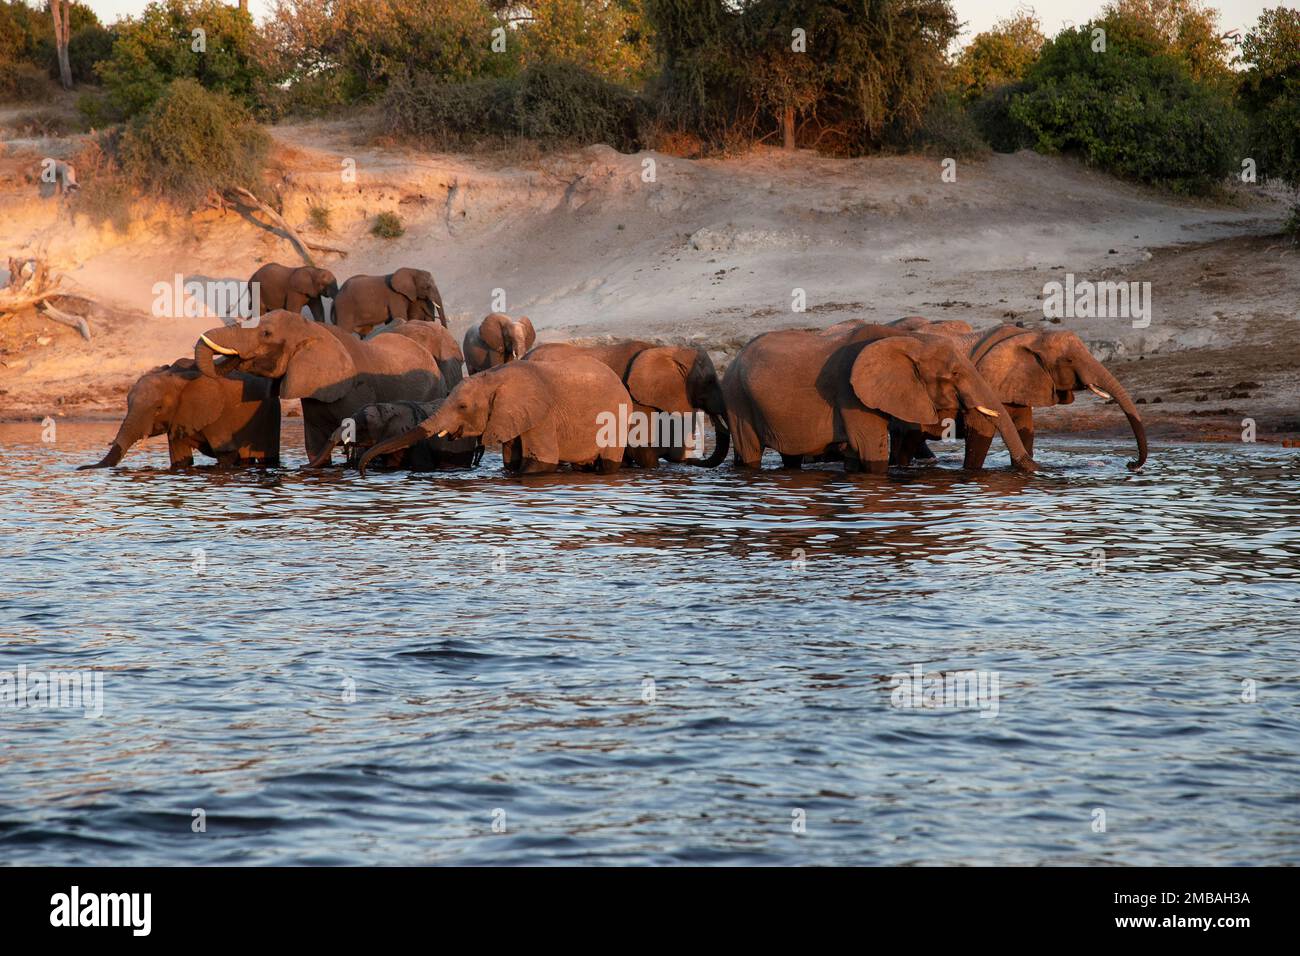 Eine Herde afrikanischer Elefanten Loxodonta african, die am späten Abend einen Drink genießen und im Fluss Chobe, Botsuana, baden Stockfoto